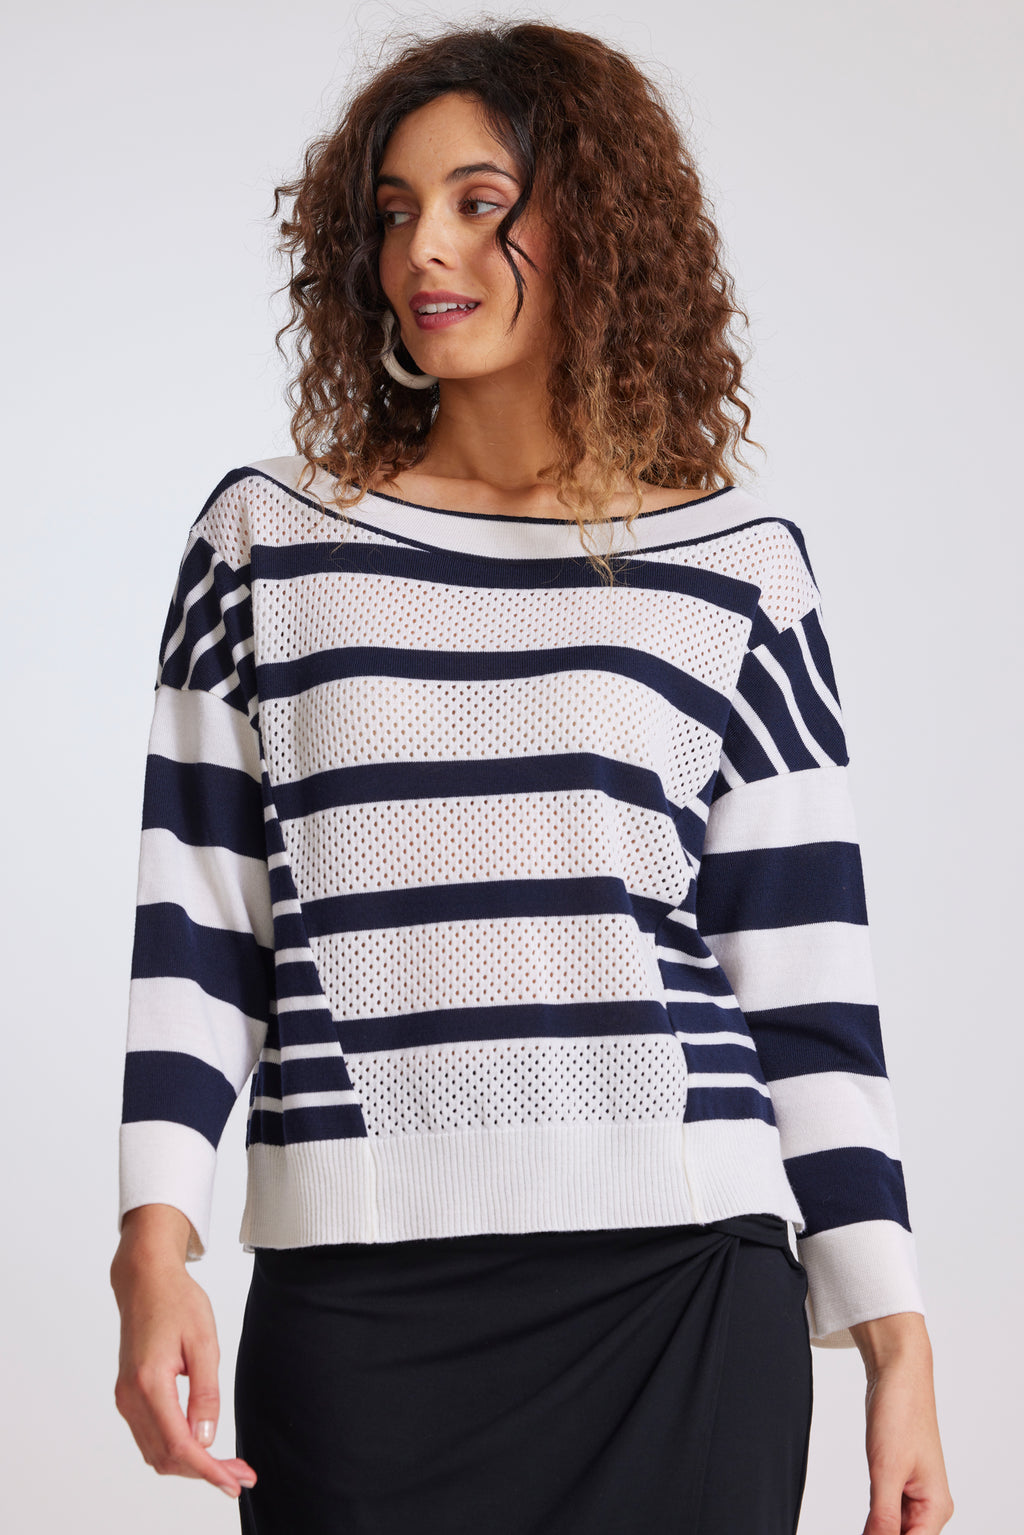 PAULA RYAN Stripe Boat Neck Sweater - Navy/White - Paula Ryan